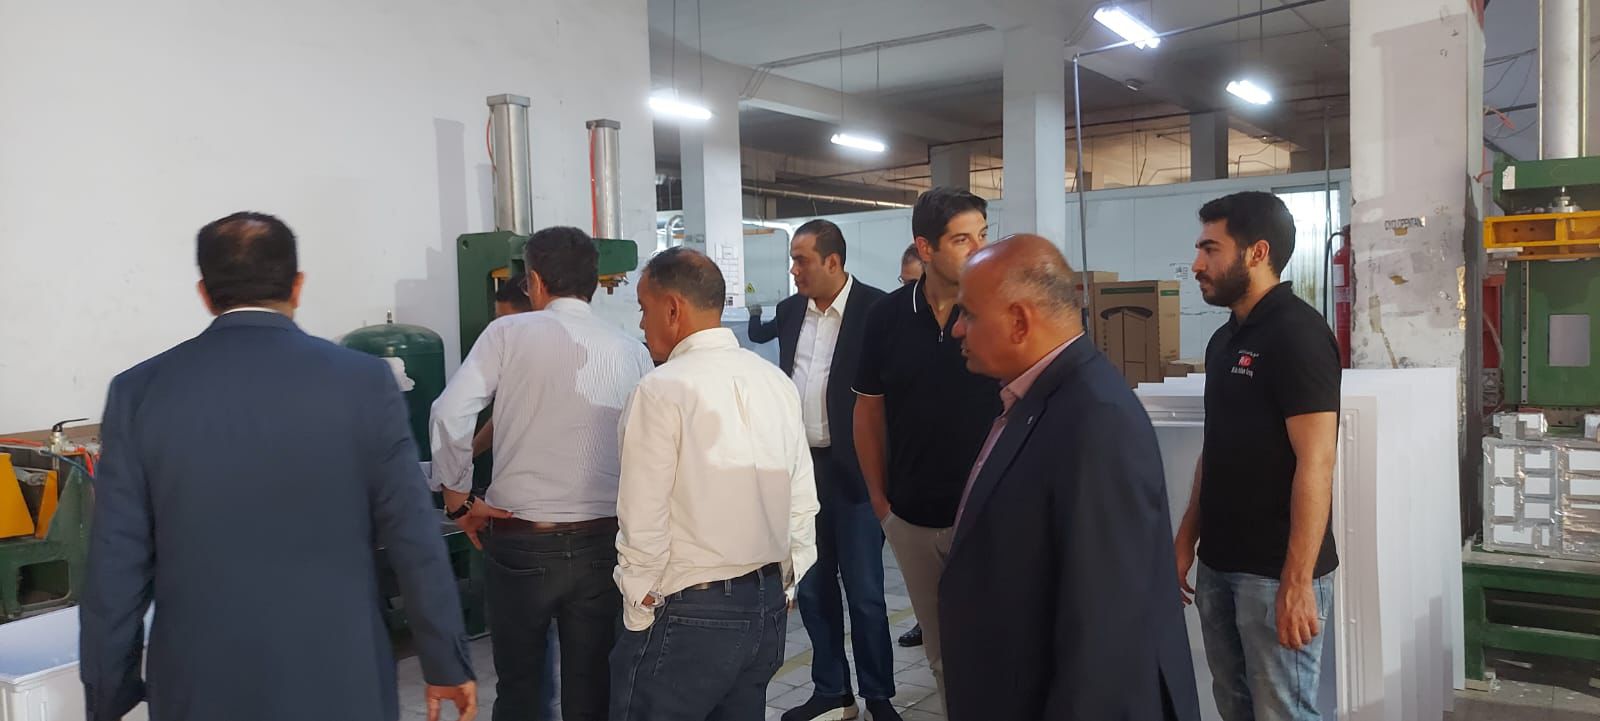 المدني الديمقراطي يزور عمال مصانع شرق عمان ويهنئهم بعيدهم